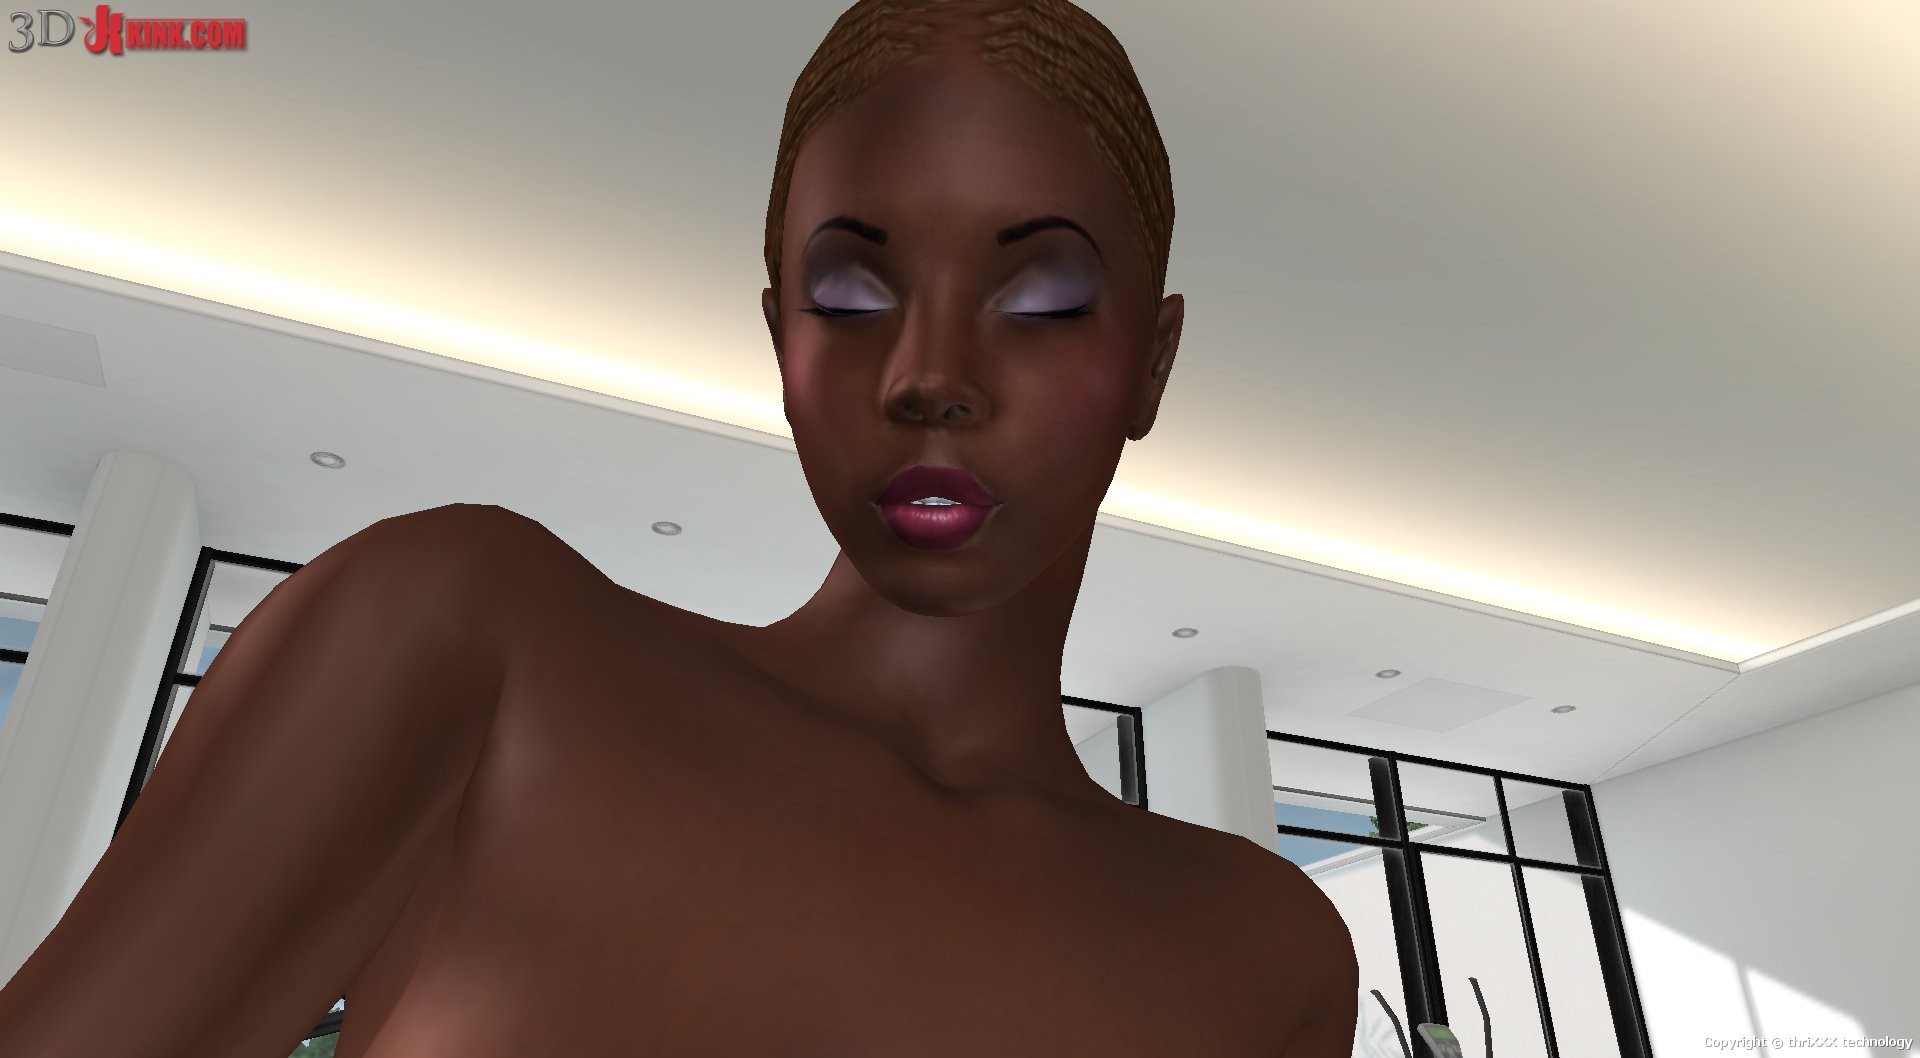 Sexo interracial lesbiano creado en un juego de sexo virtual fetichista en 3d.
 #69359465